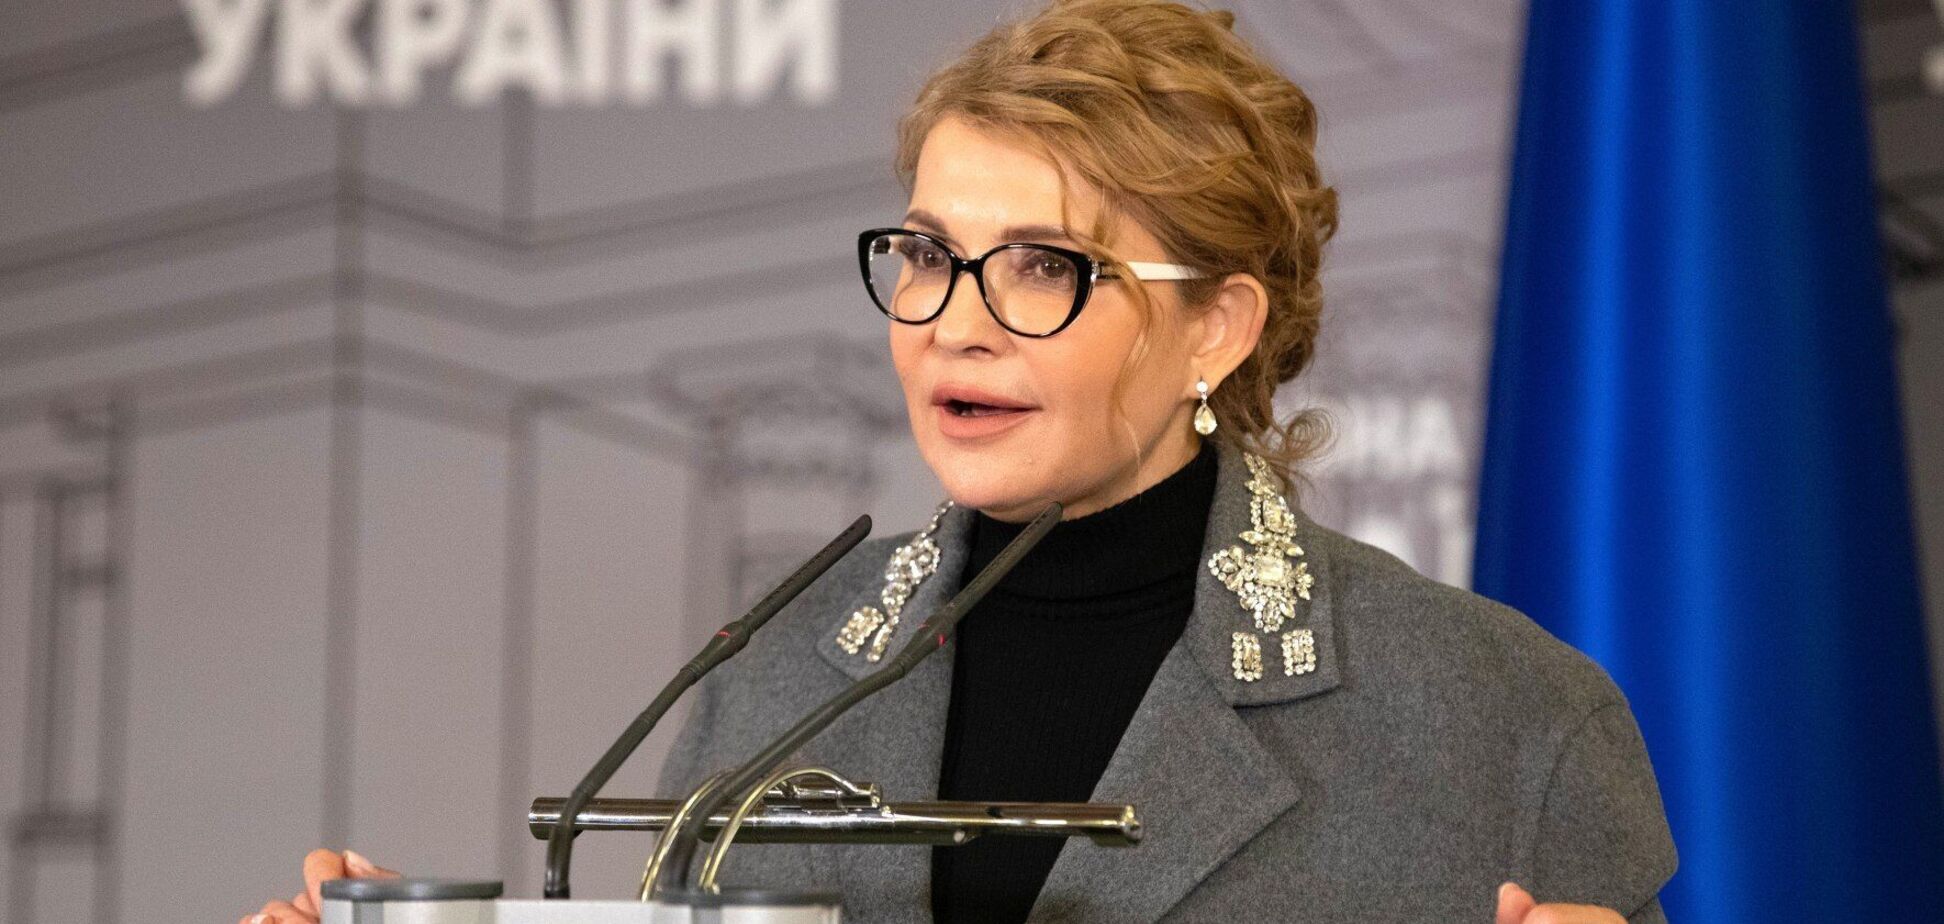 Експерт назвав Тимошенко єдиним політиком в Україні, хто може формувати світовий порядок денний